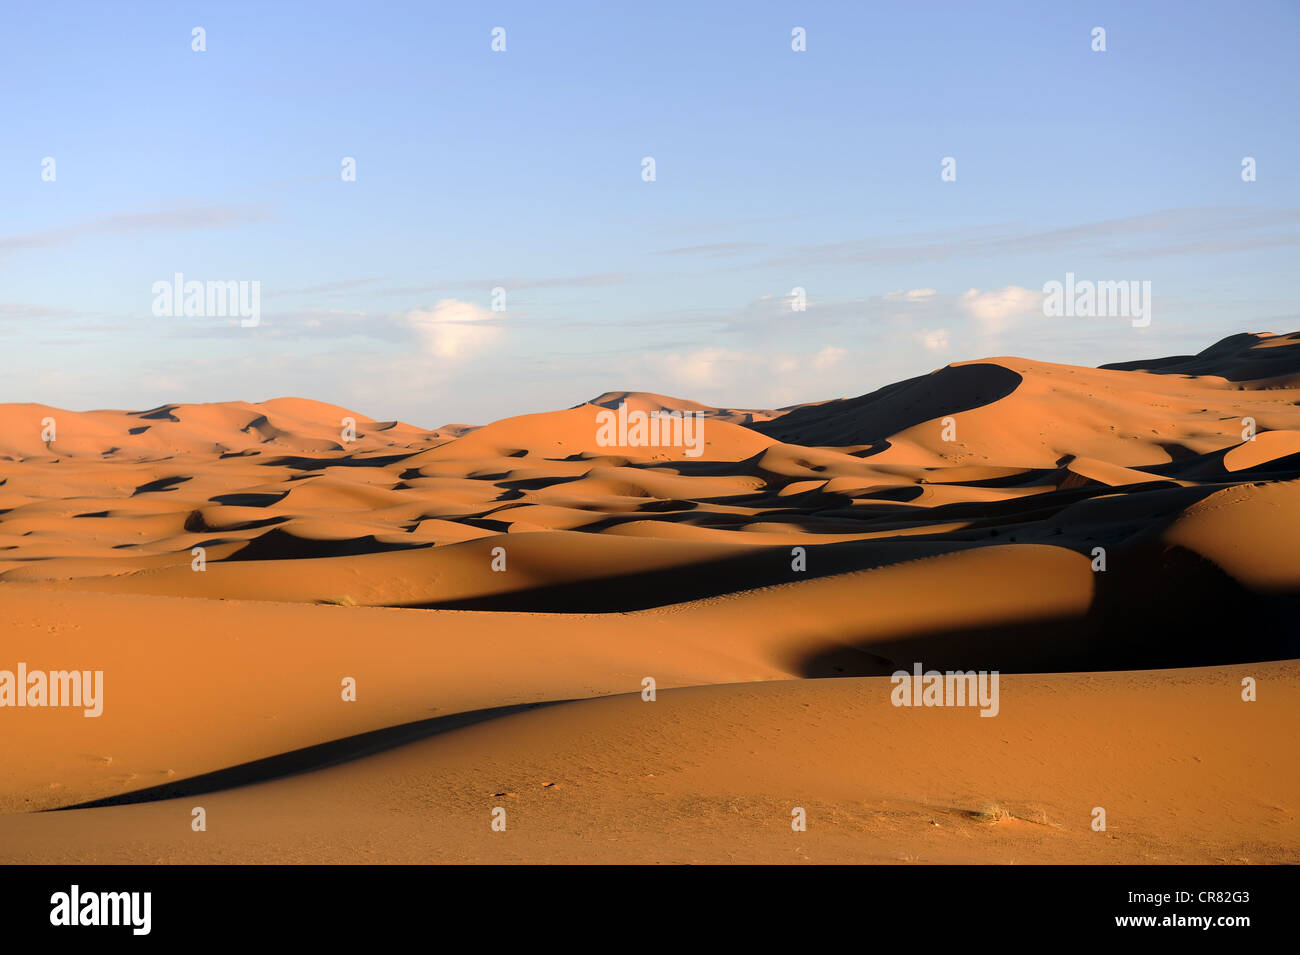 Las dunas de arena, el desierto de arena, Erg Chebbi, el desierto del Sahara, Marruecos, Norte de África, África del Norte, África Foto de stock